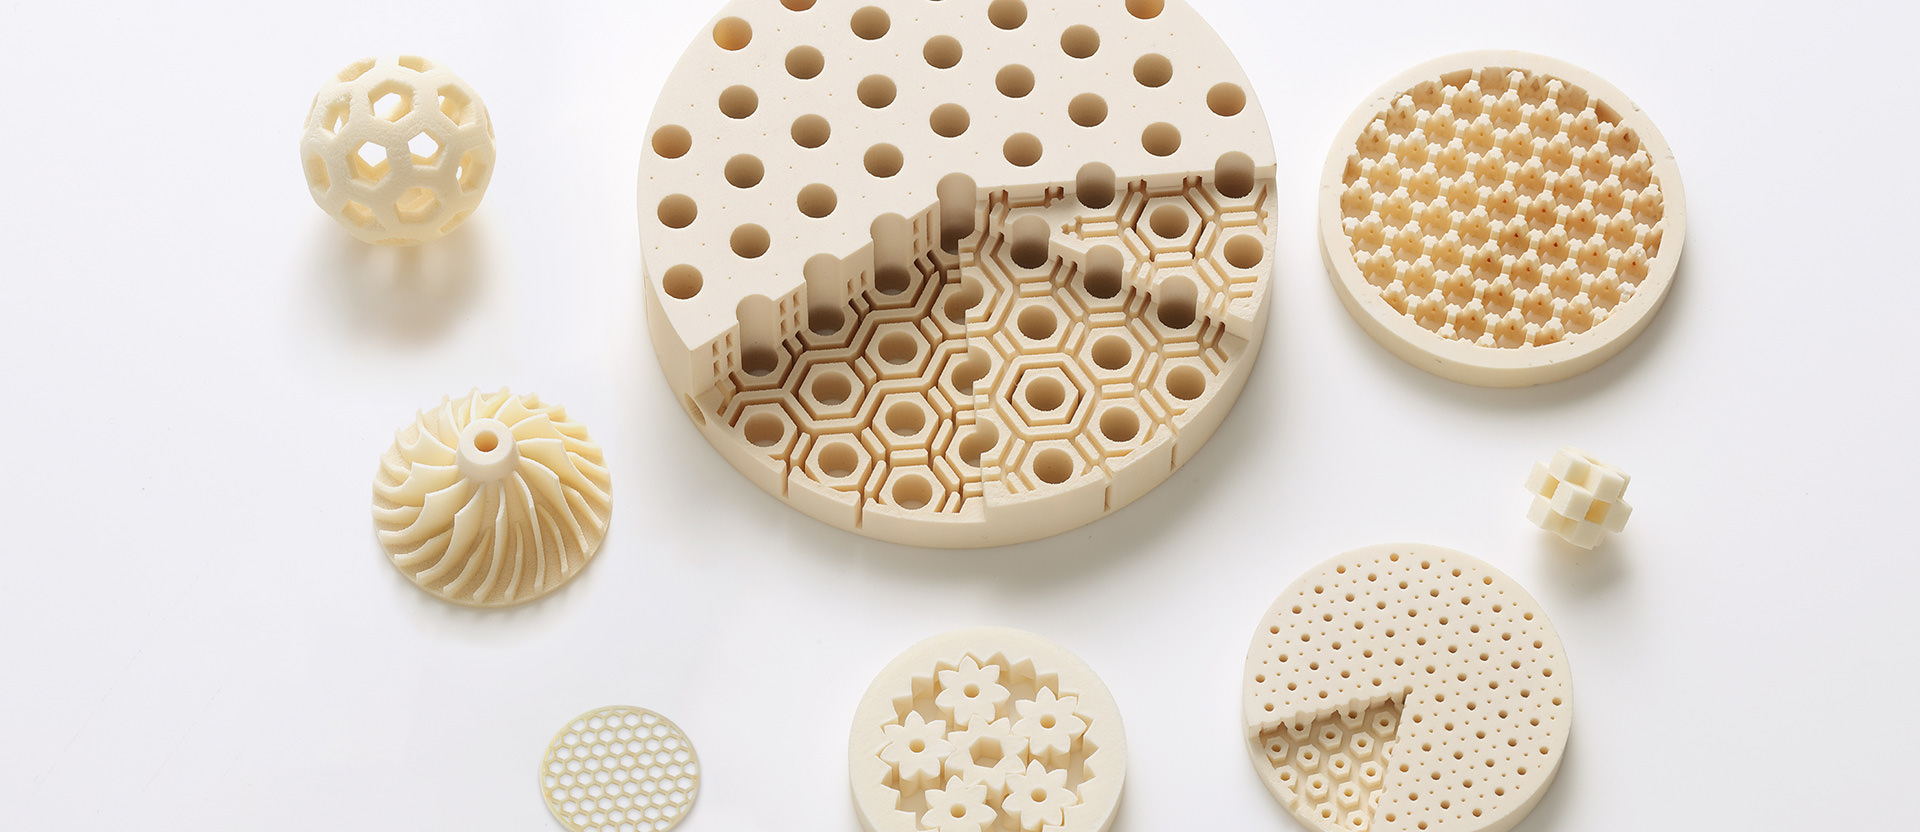 Ceramic material for 3D printers